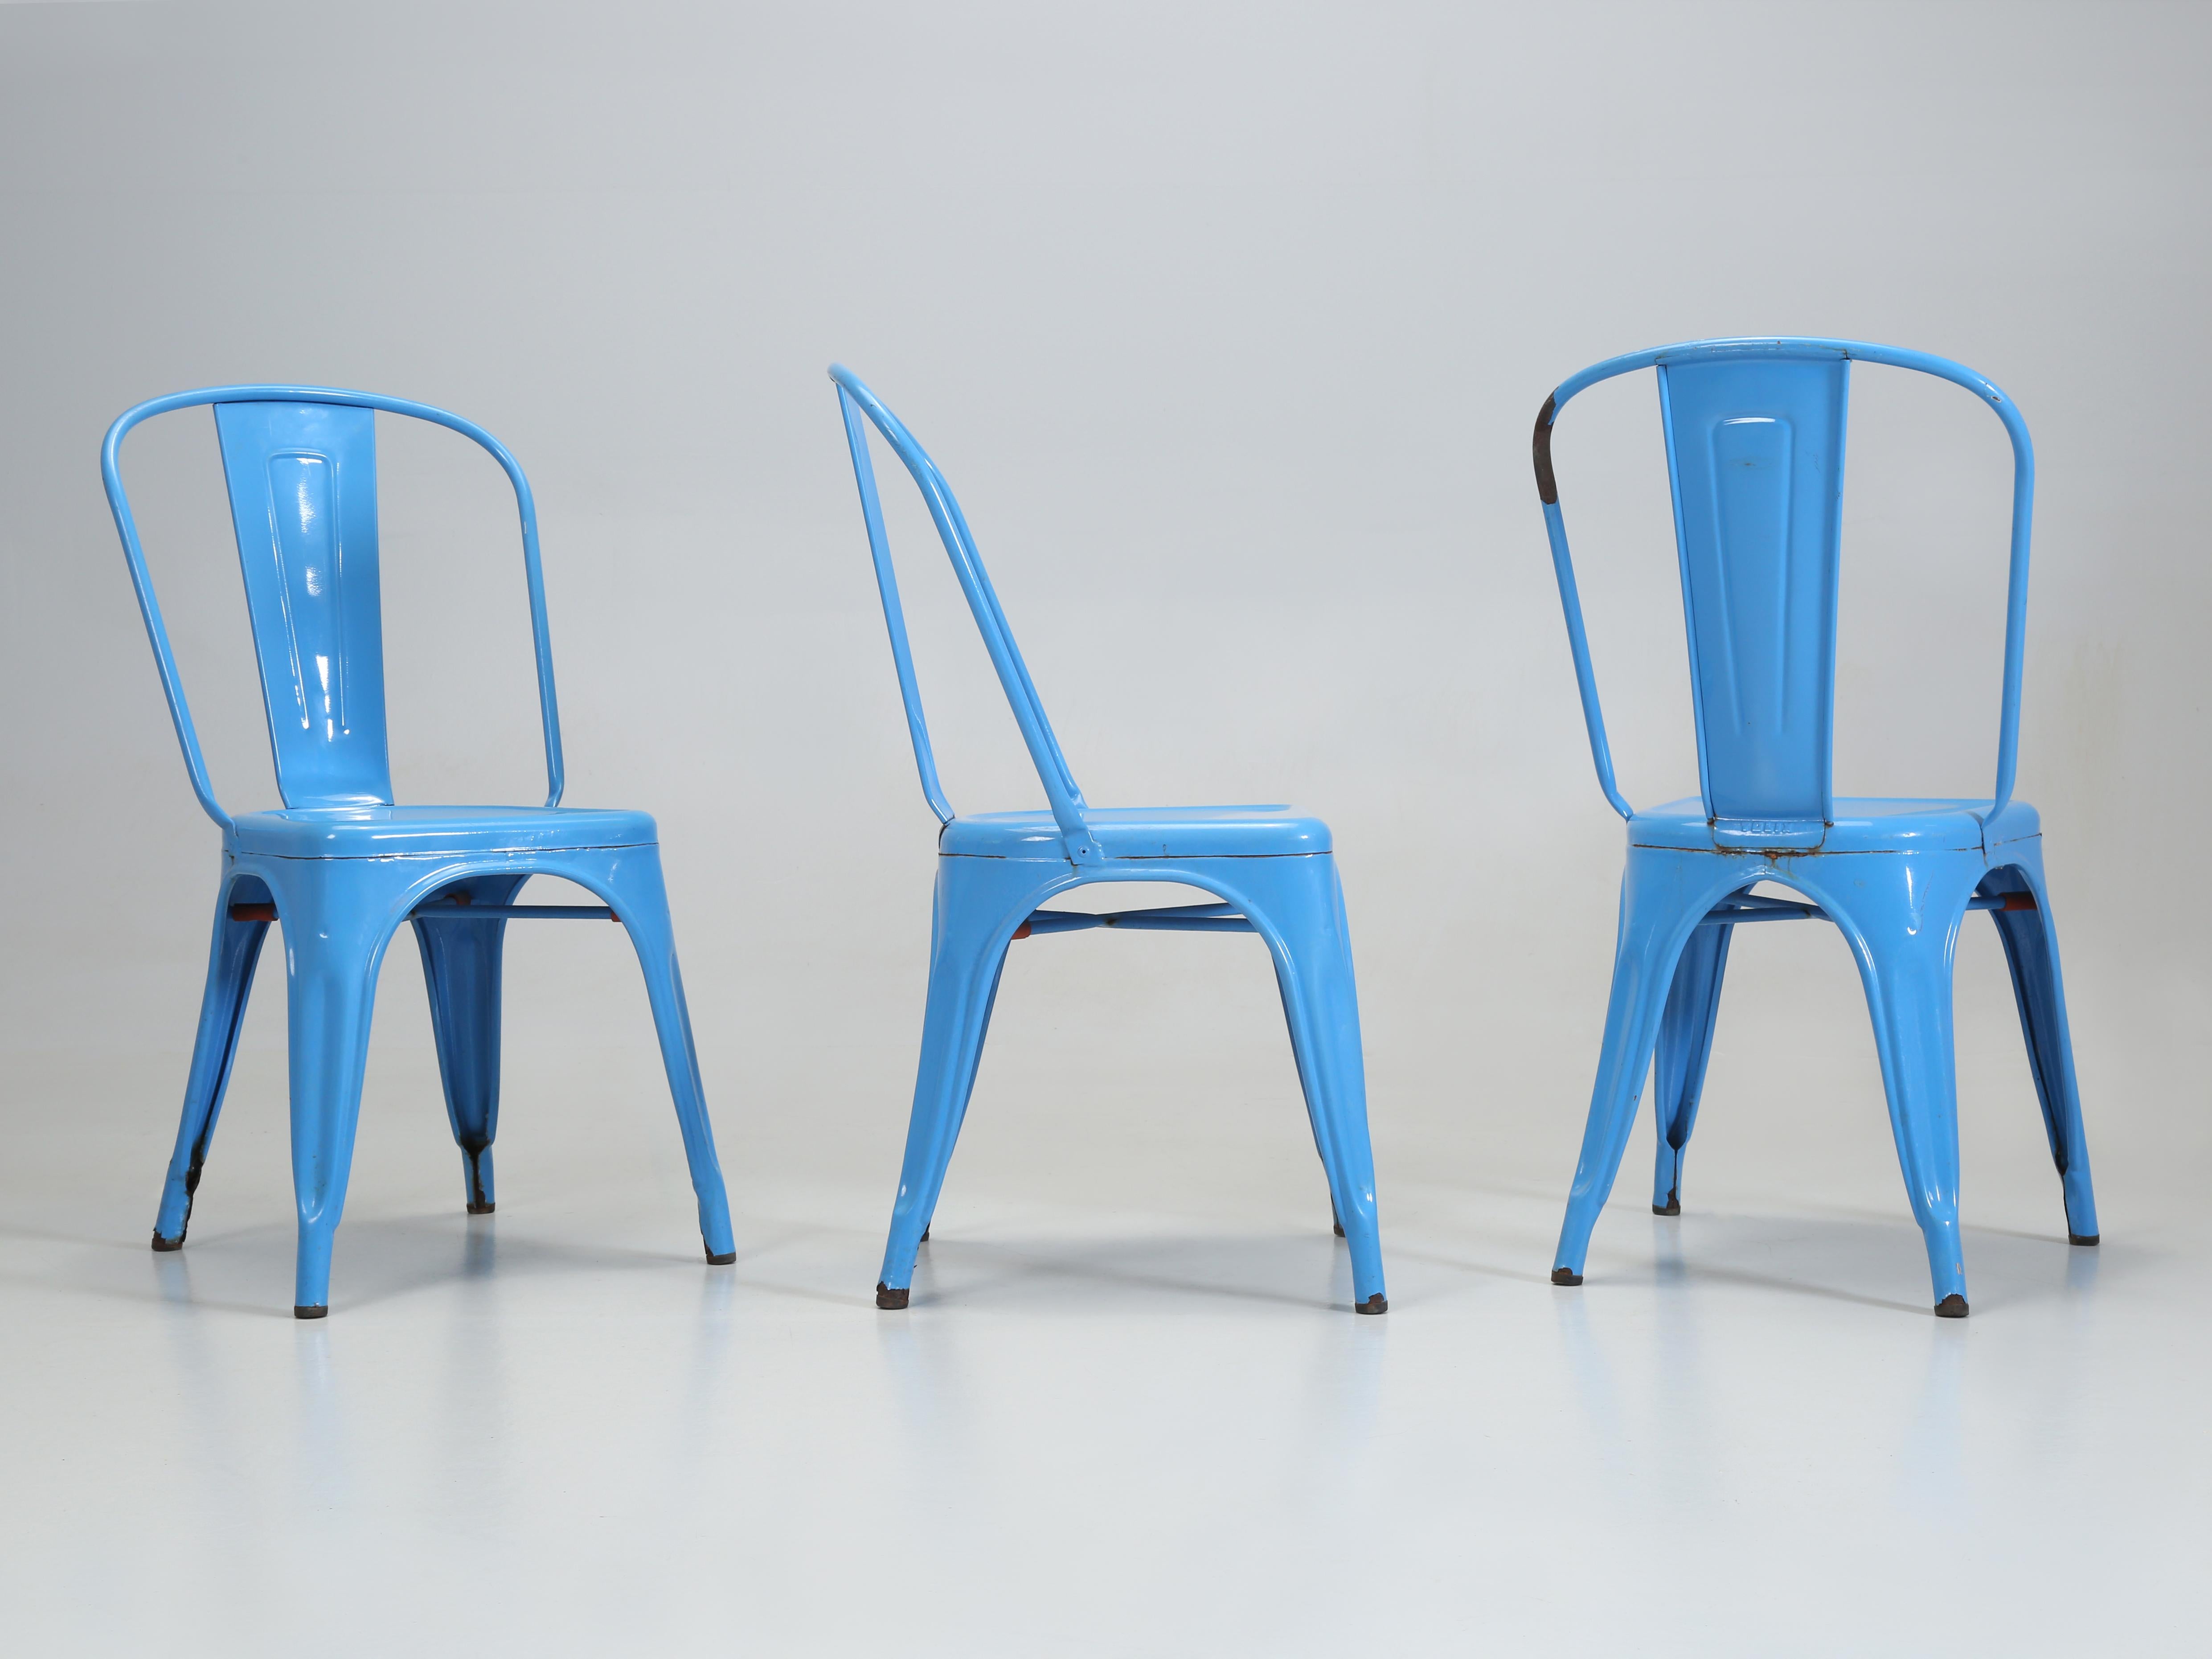 Authentiques chaises empilables en acier vintage français faites à la main par Tolix. L'ensemble Tolix comprend (4) chaises empilables en acier Vintage By d'aspect vieilli. Actuellement, nous avons en stock plus de (1300) pièces de chaises, tables